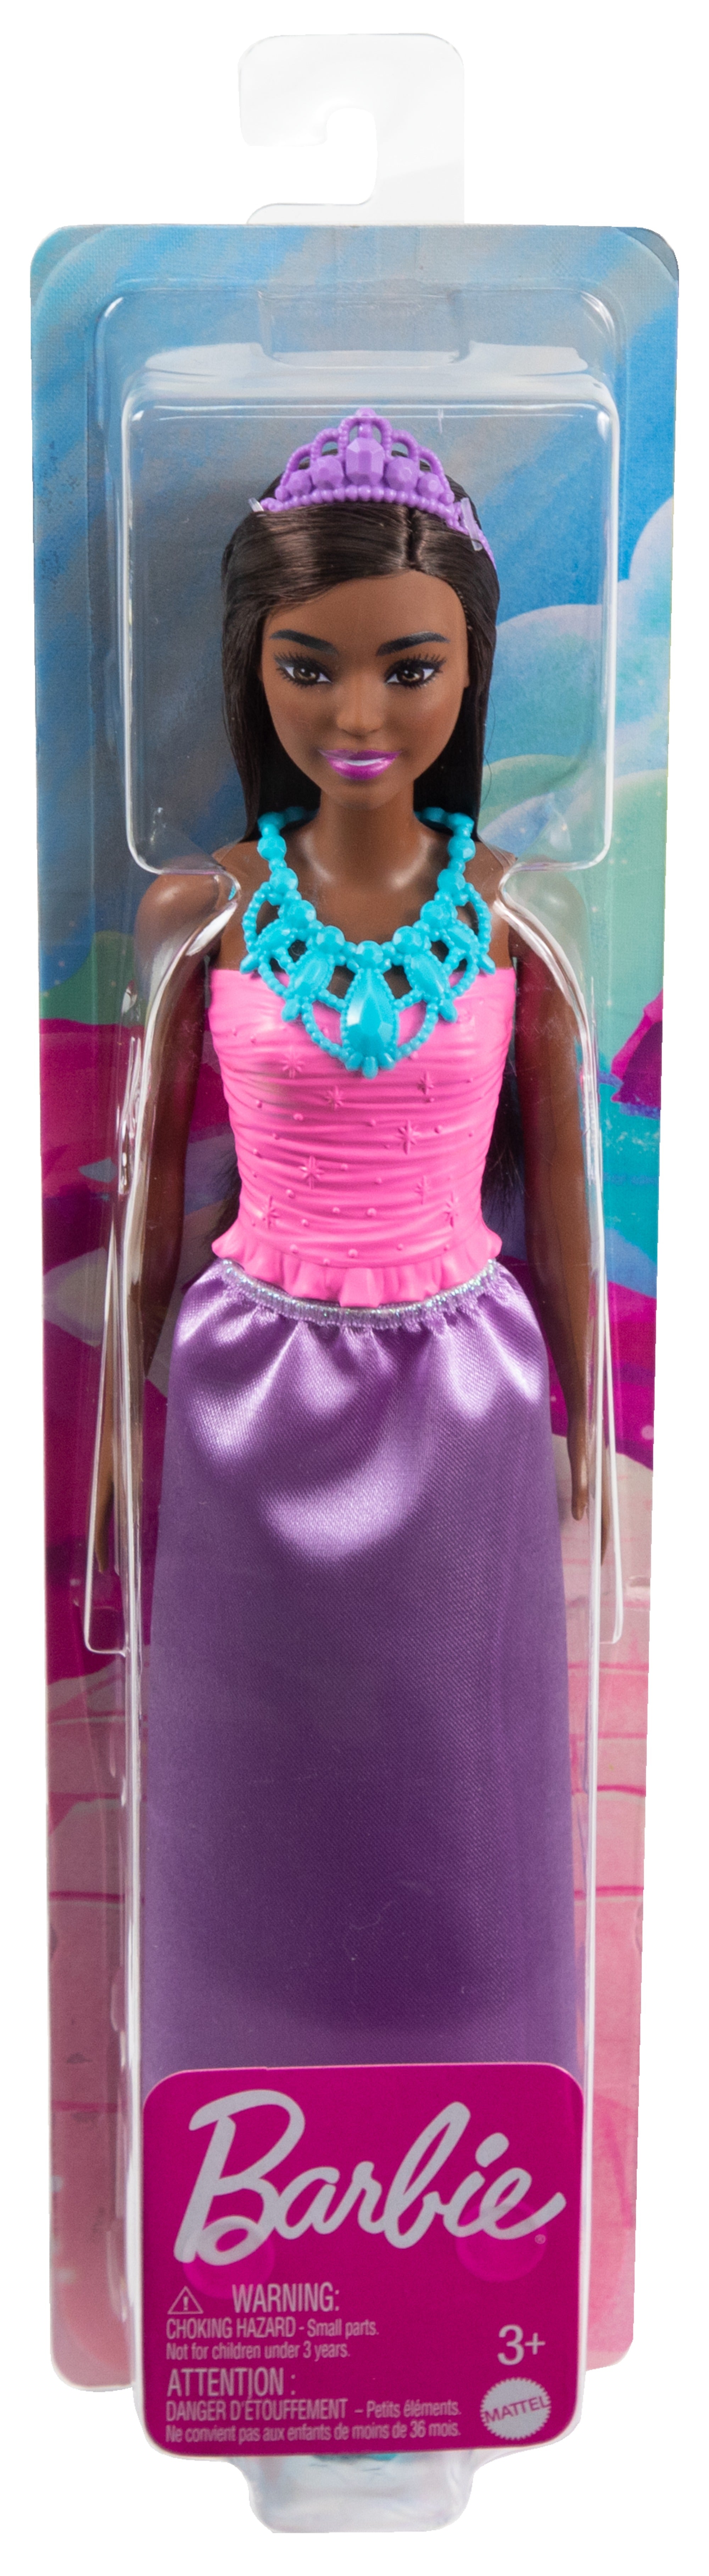 Wedding Barbie Brunette Doll 9993 Mattel 2000 No. 48140 NRFB - We